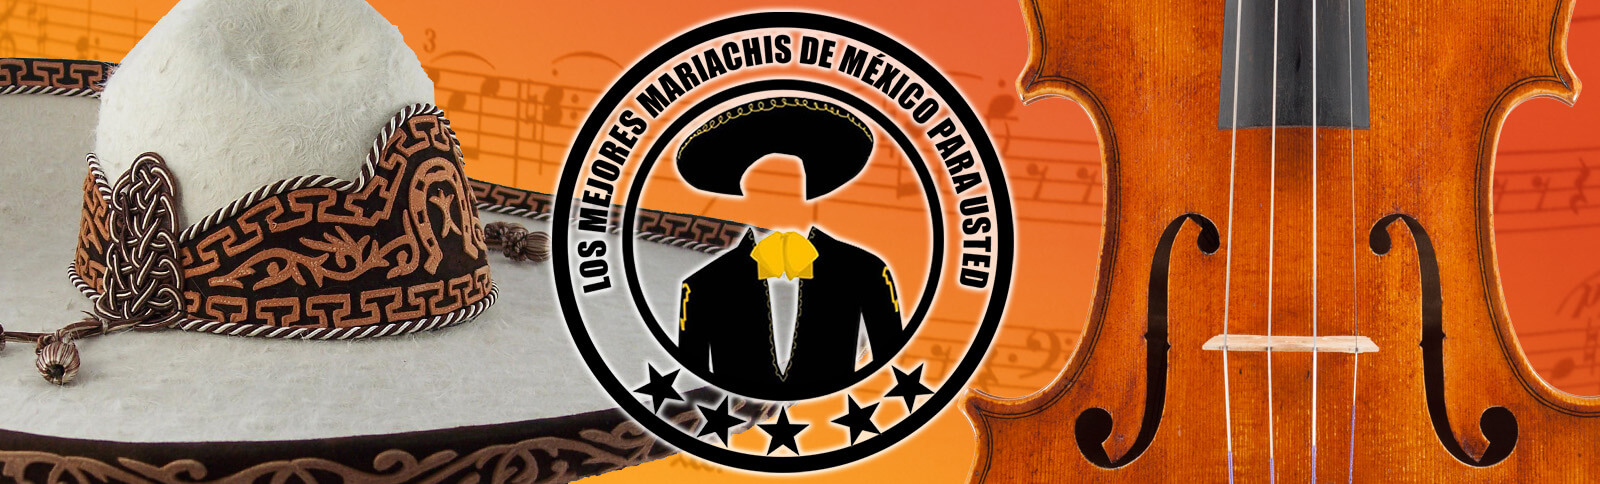 Mariachis en el distrito federal